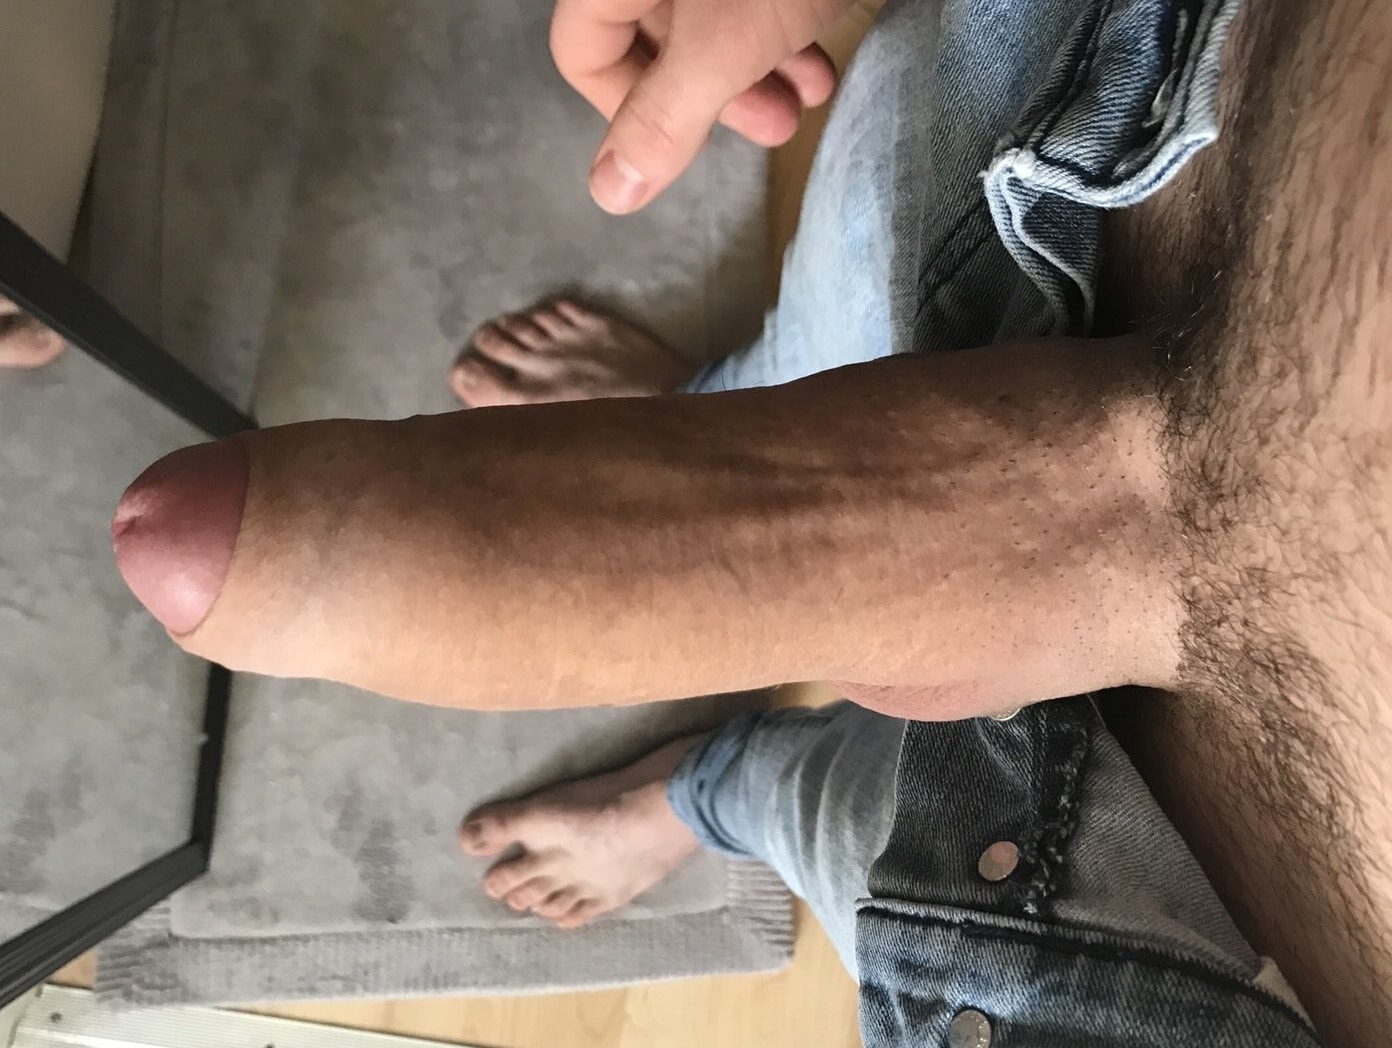 amateur posting his penis